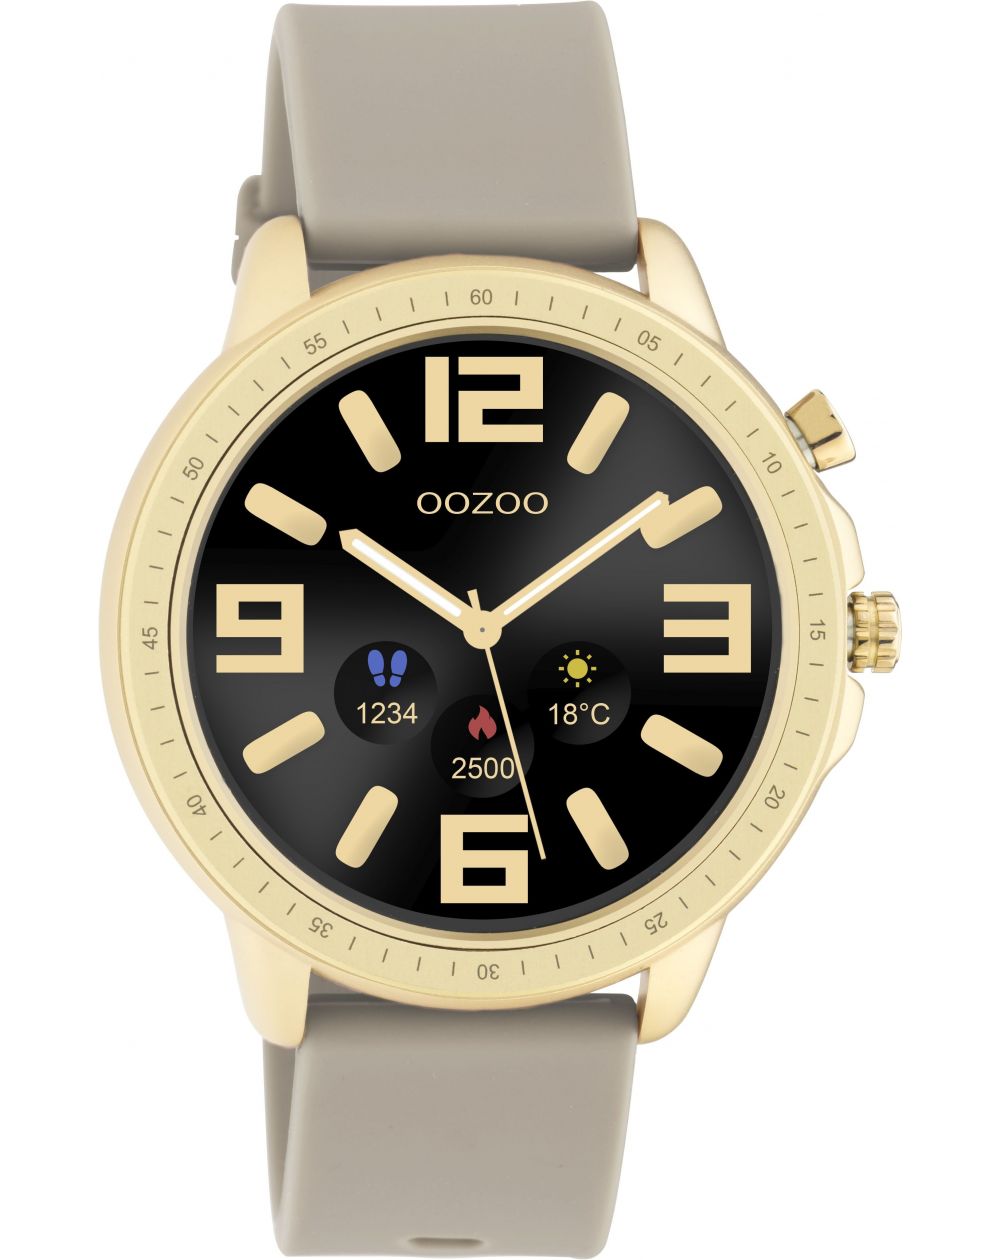 Montre Oozoo Q00319 - Smartwatch - Marque OOZOO - Livraison gratuite